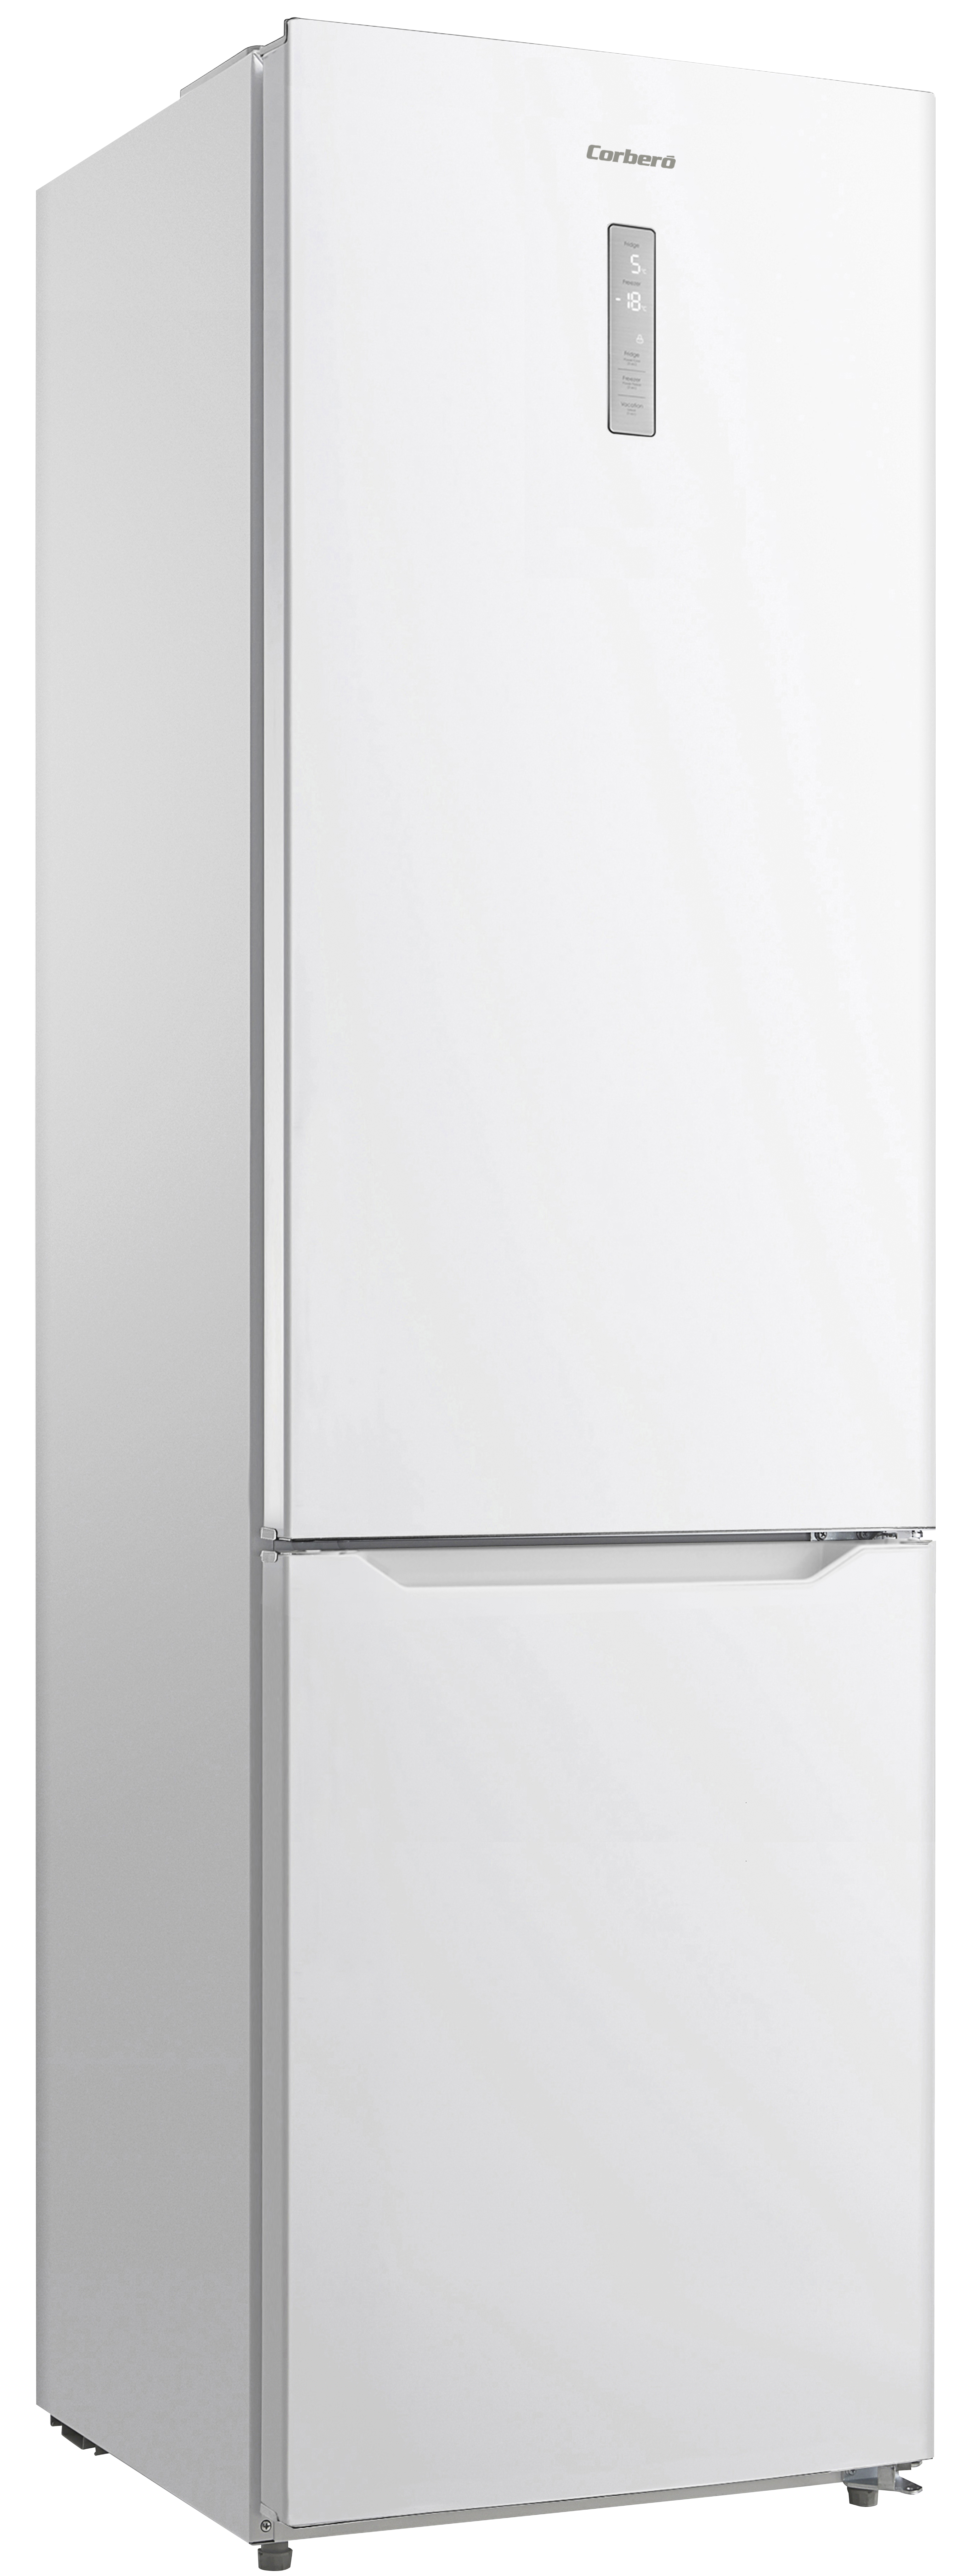 Nuevos frigoríficos Bosch, análisis de los mejores modelos - Milar